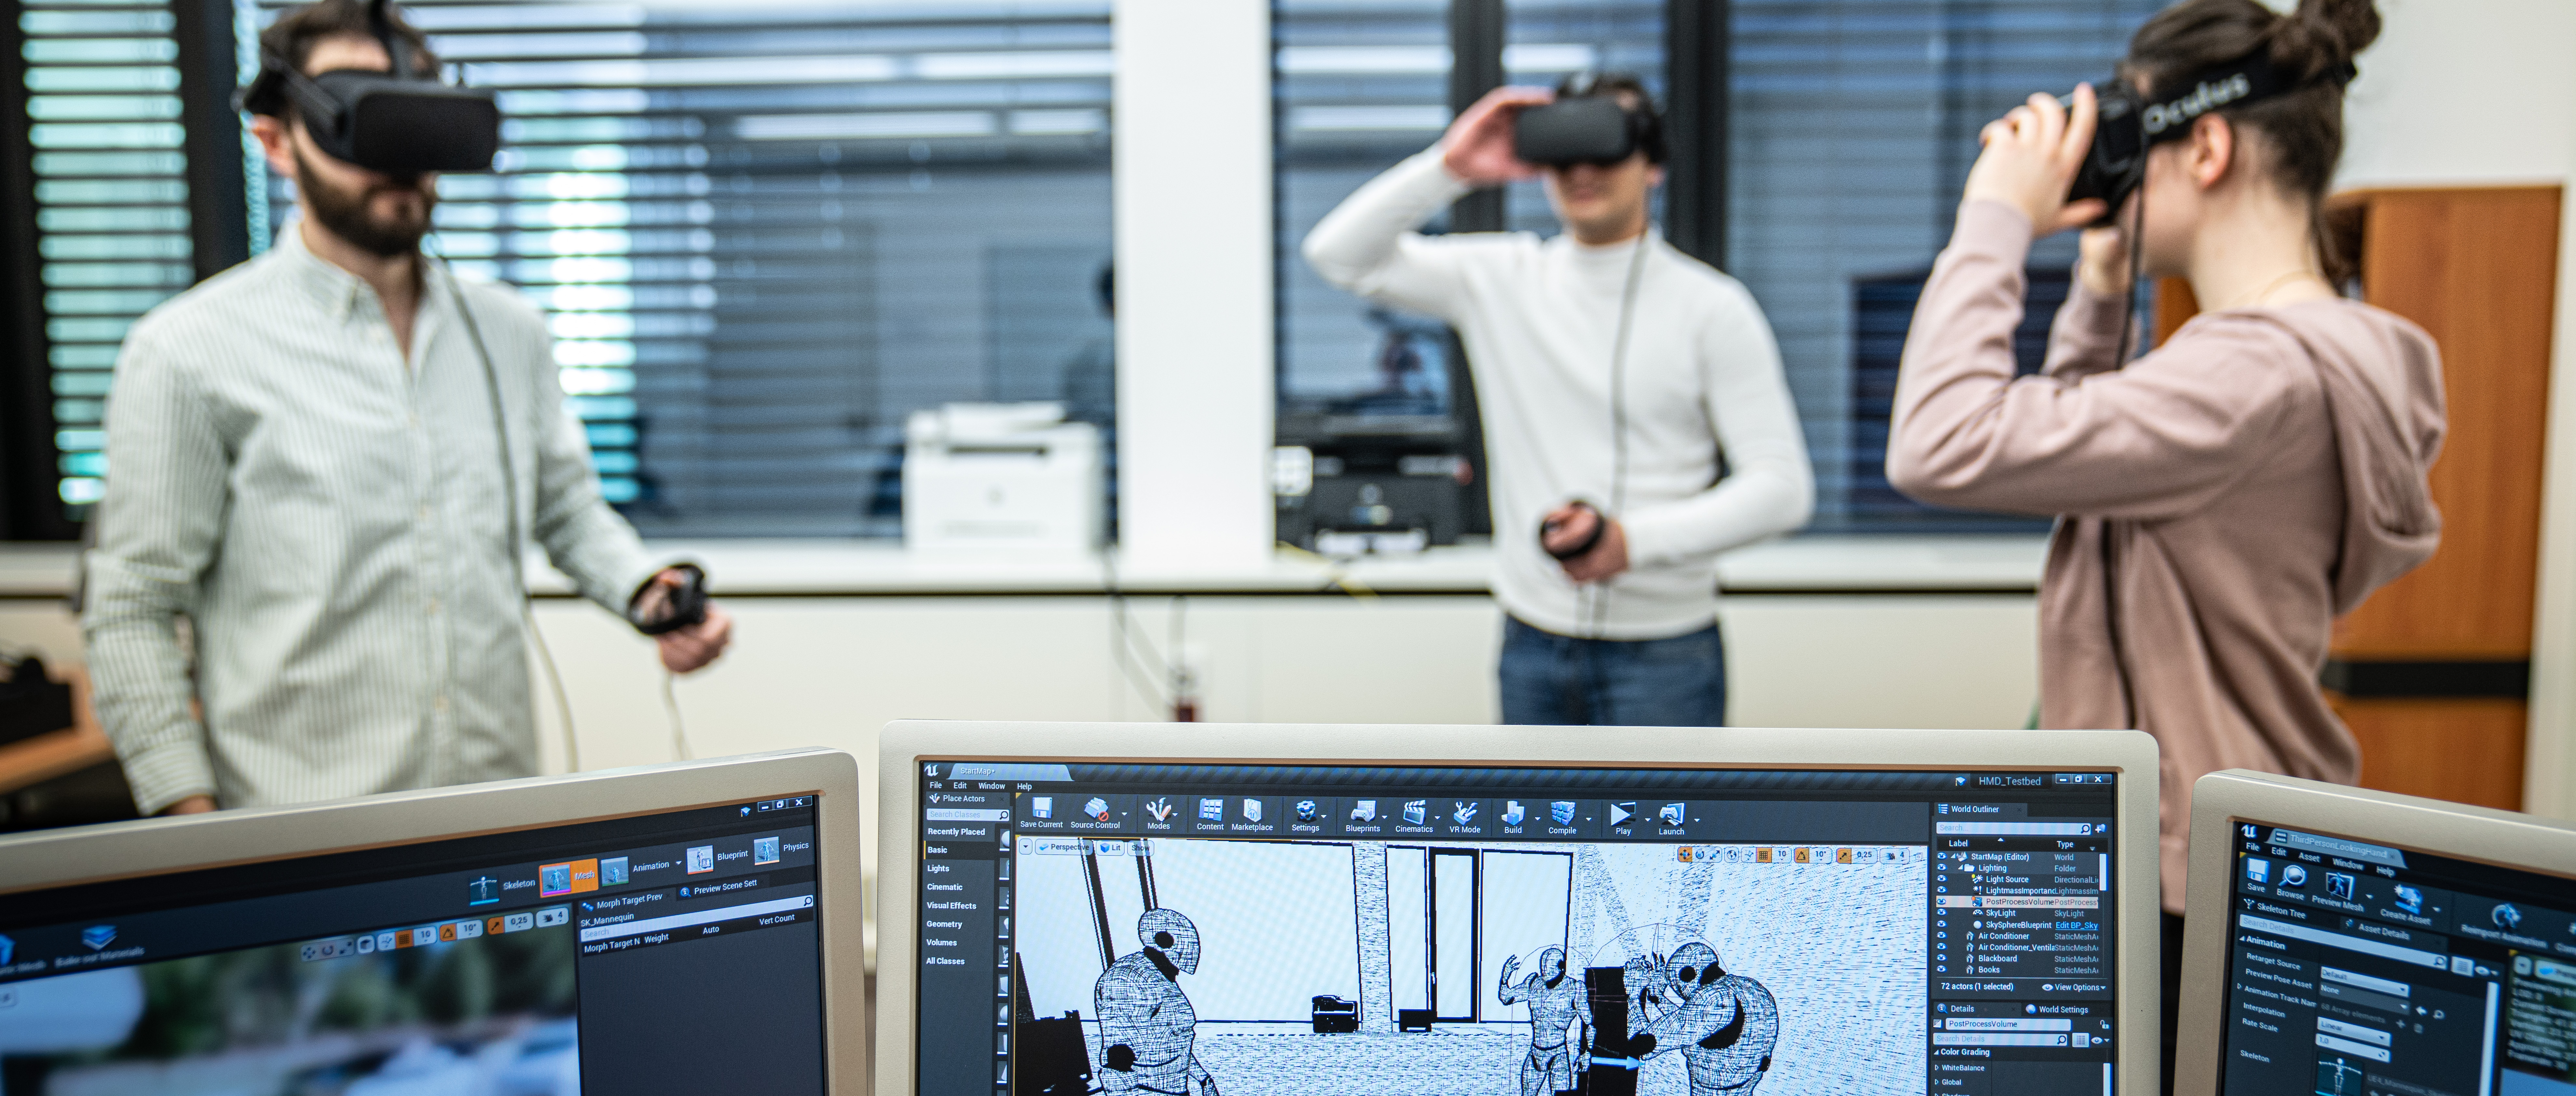 Drei Studierend, stehend im Raum, haben VR-Brillen auf, während auf einem PC-Monitor die passenden Avatare im virtuellen Raum zu sehen sind